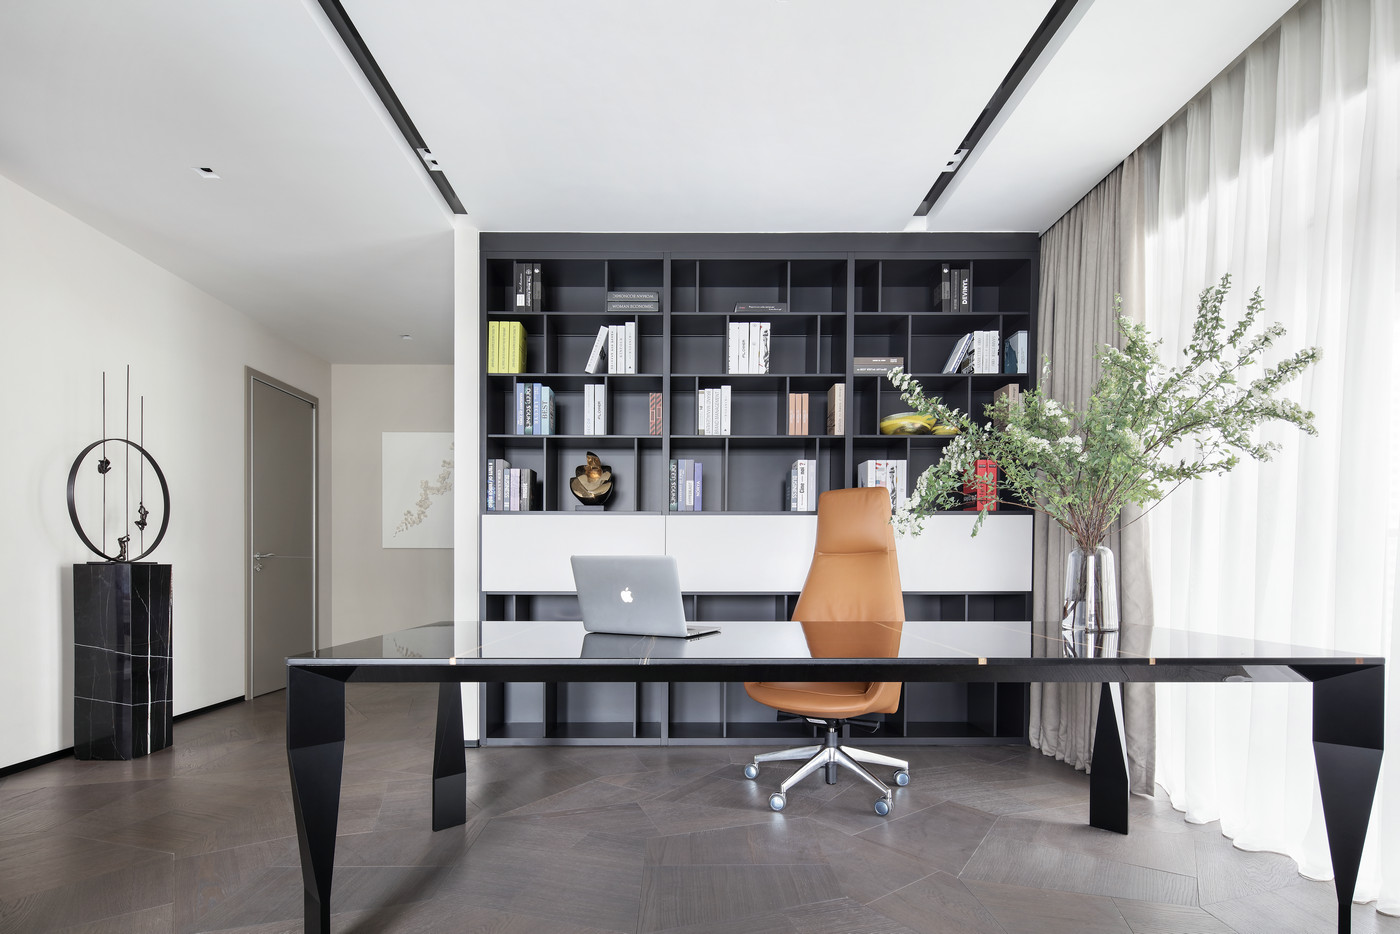 书柜黑白相间，黑色书桌大气优雅，局部使用焦糖色座椅点缀，令空间有了生机与活力。